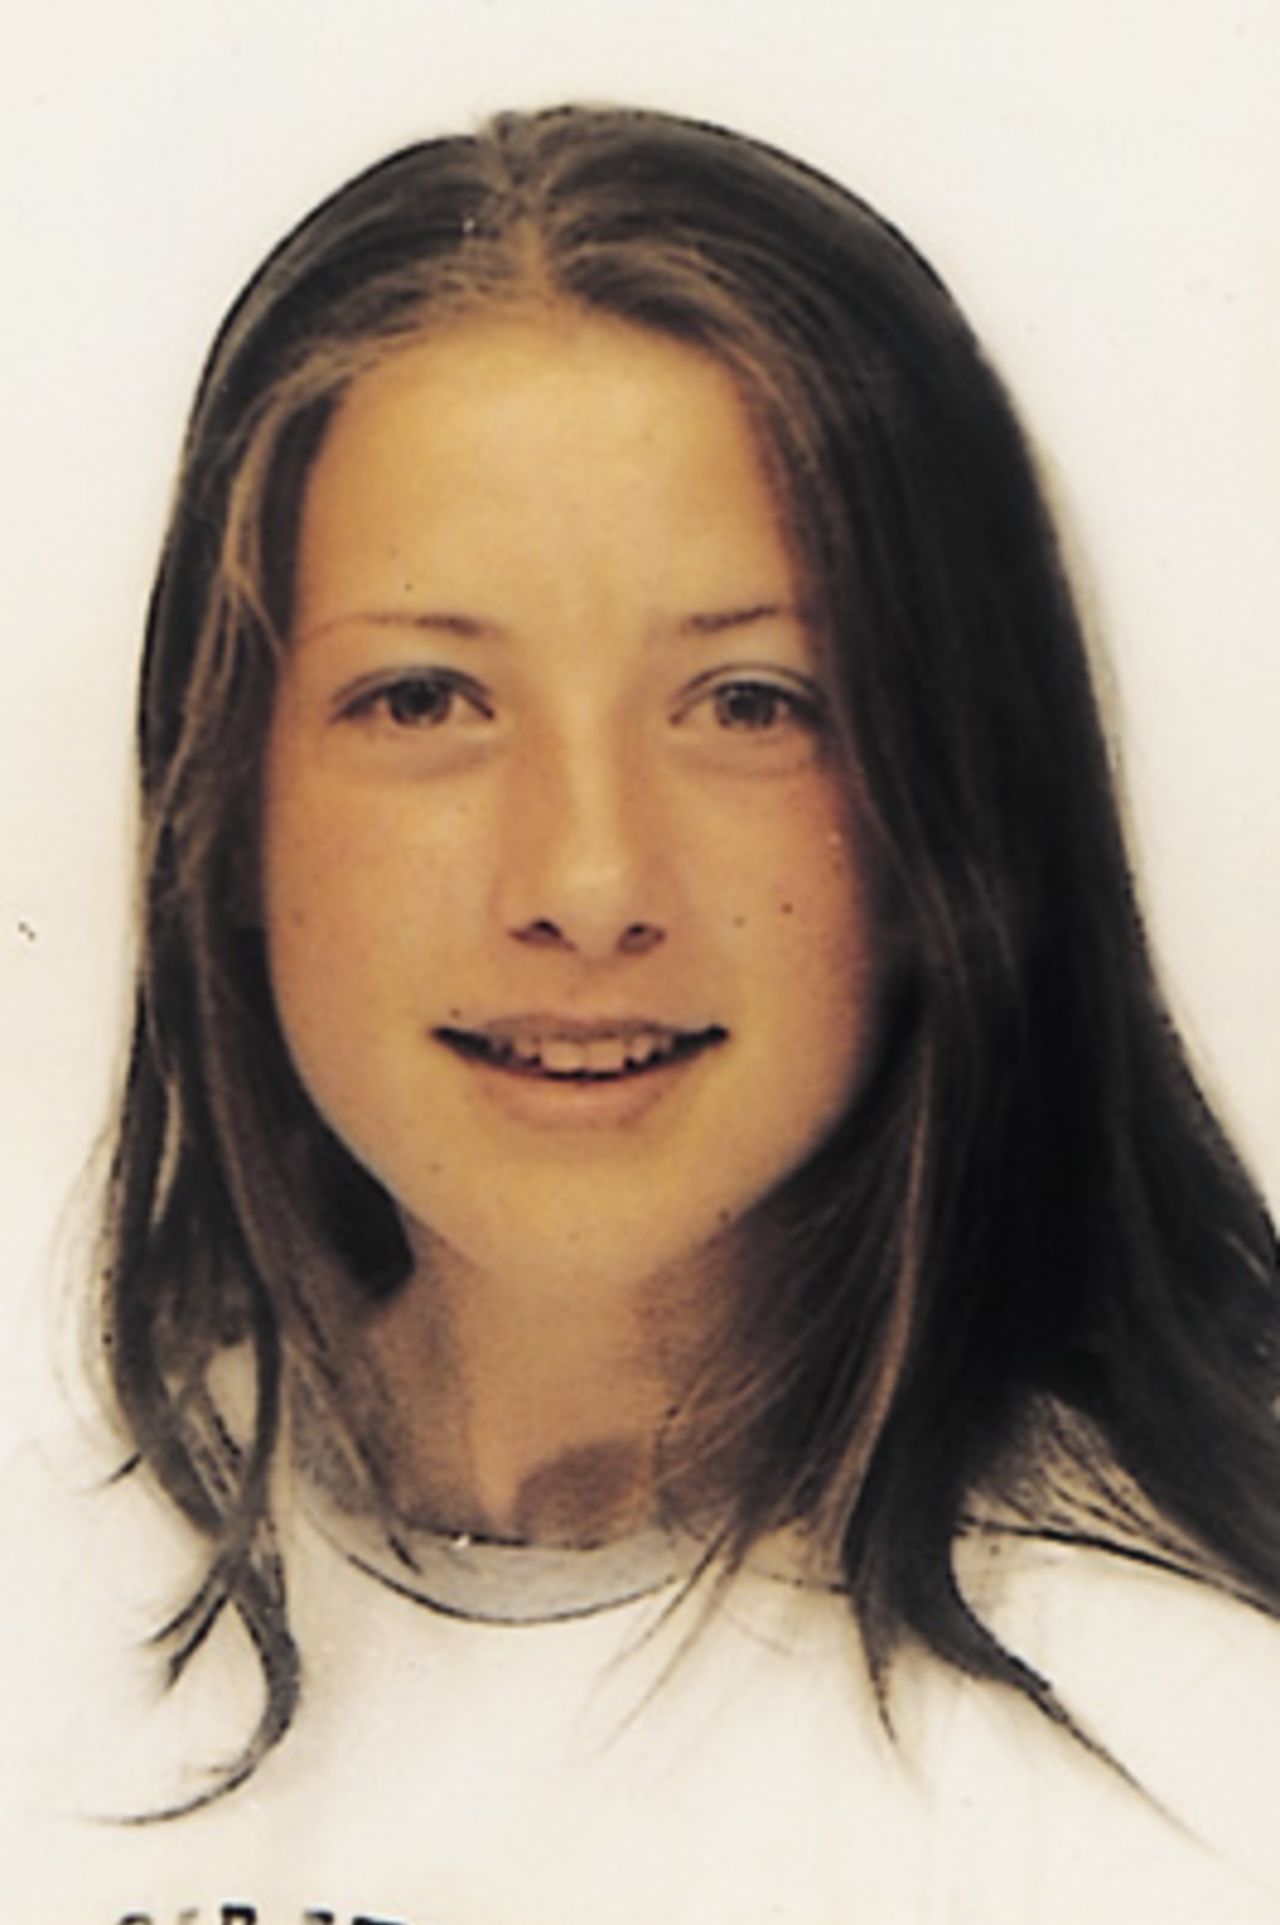 Portrait of Cecilia Joyce - Ireland preliminary squad member for the CricInfo Women's World Cup 2000